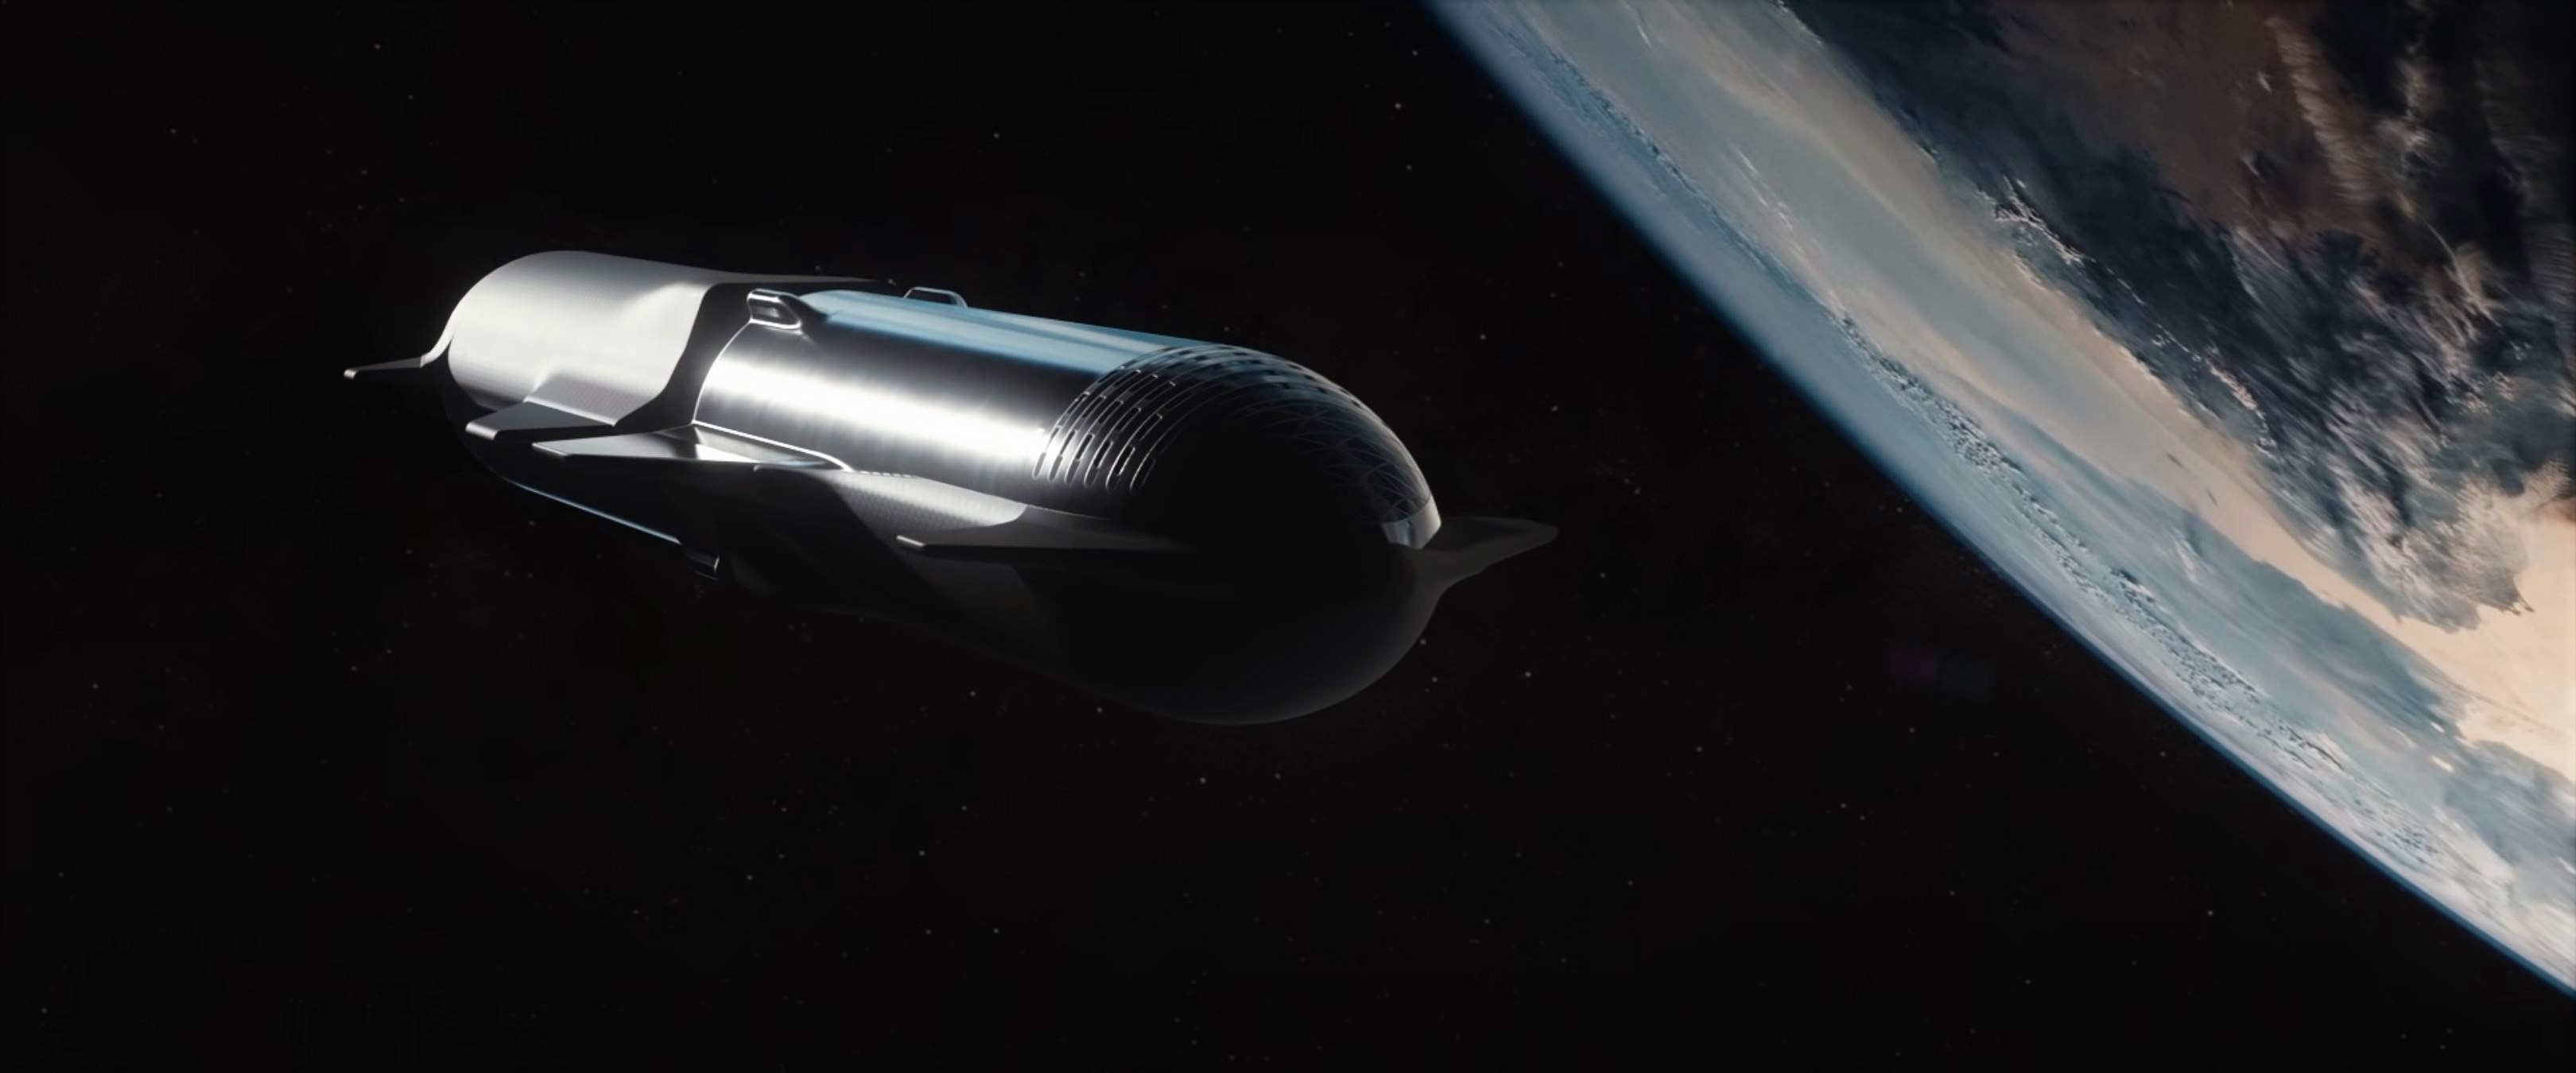 Transfer paliwa pomiędzy statkami Starship, wizja artysty (Źródło: SpaceX)